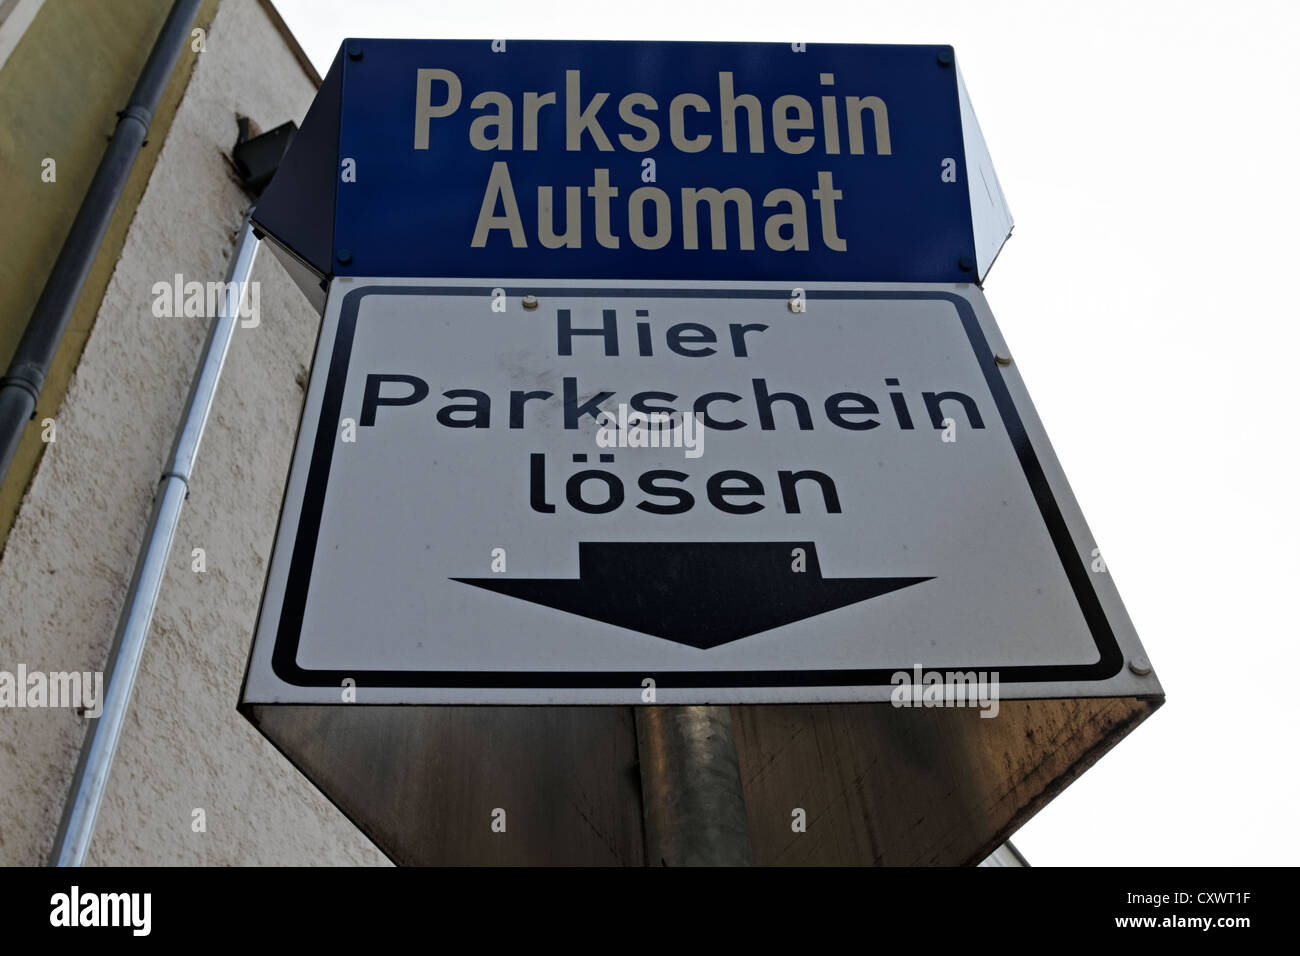 Distributeur de tickets de parking de voitures allemand signe, Rosenheim Haute-bavière Allemagne Banque D'Images